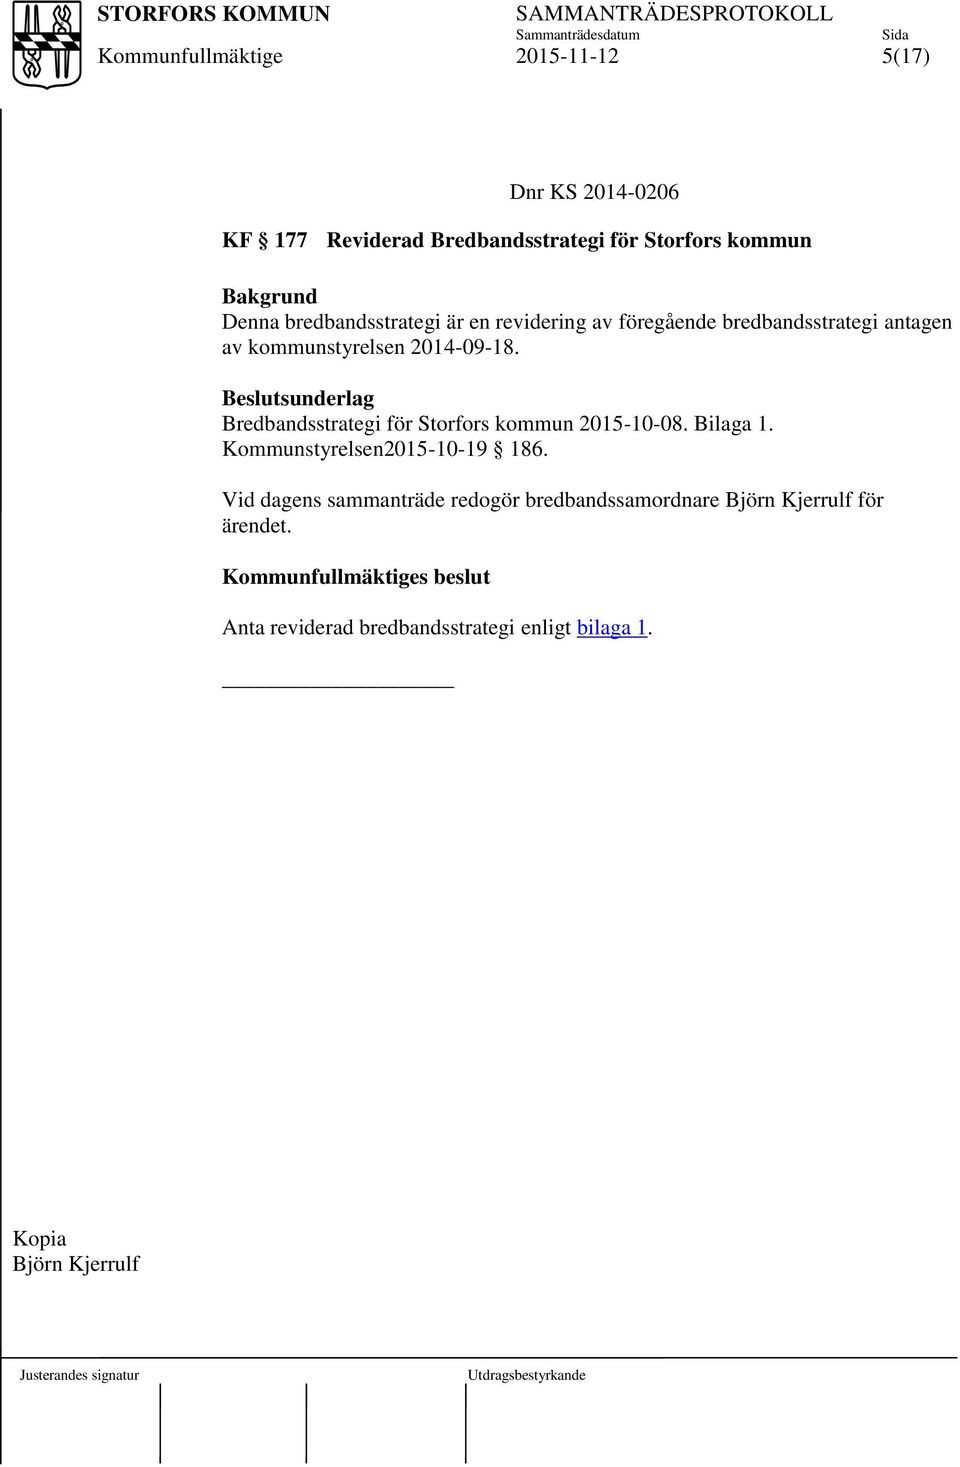 Beslutsunderlag Bredbandsstrategi för Storfors kommun 2015-10-08. Bilaga 1. Kommunstyrelsen2015-10-19 186.